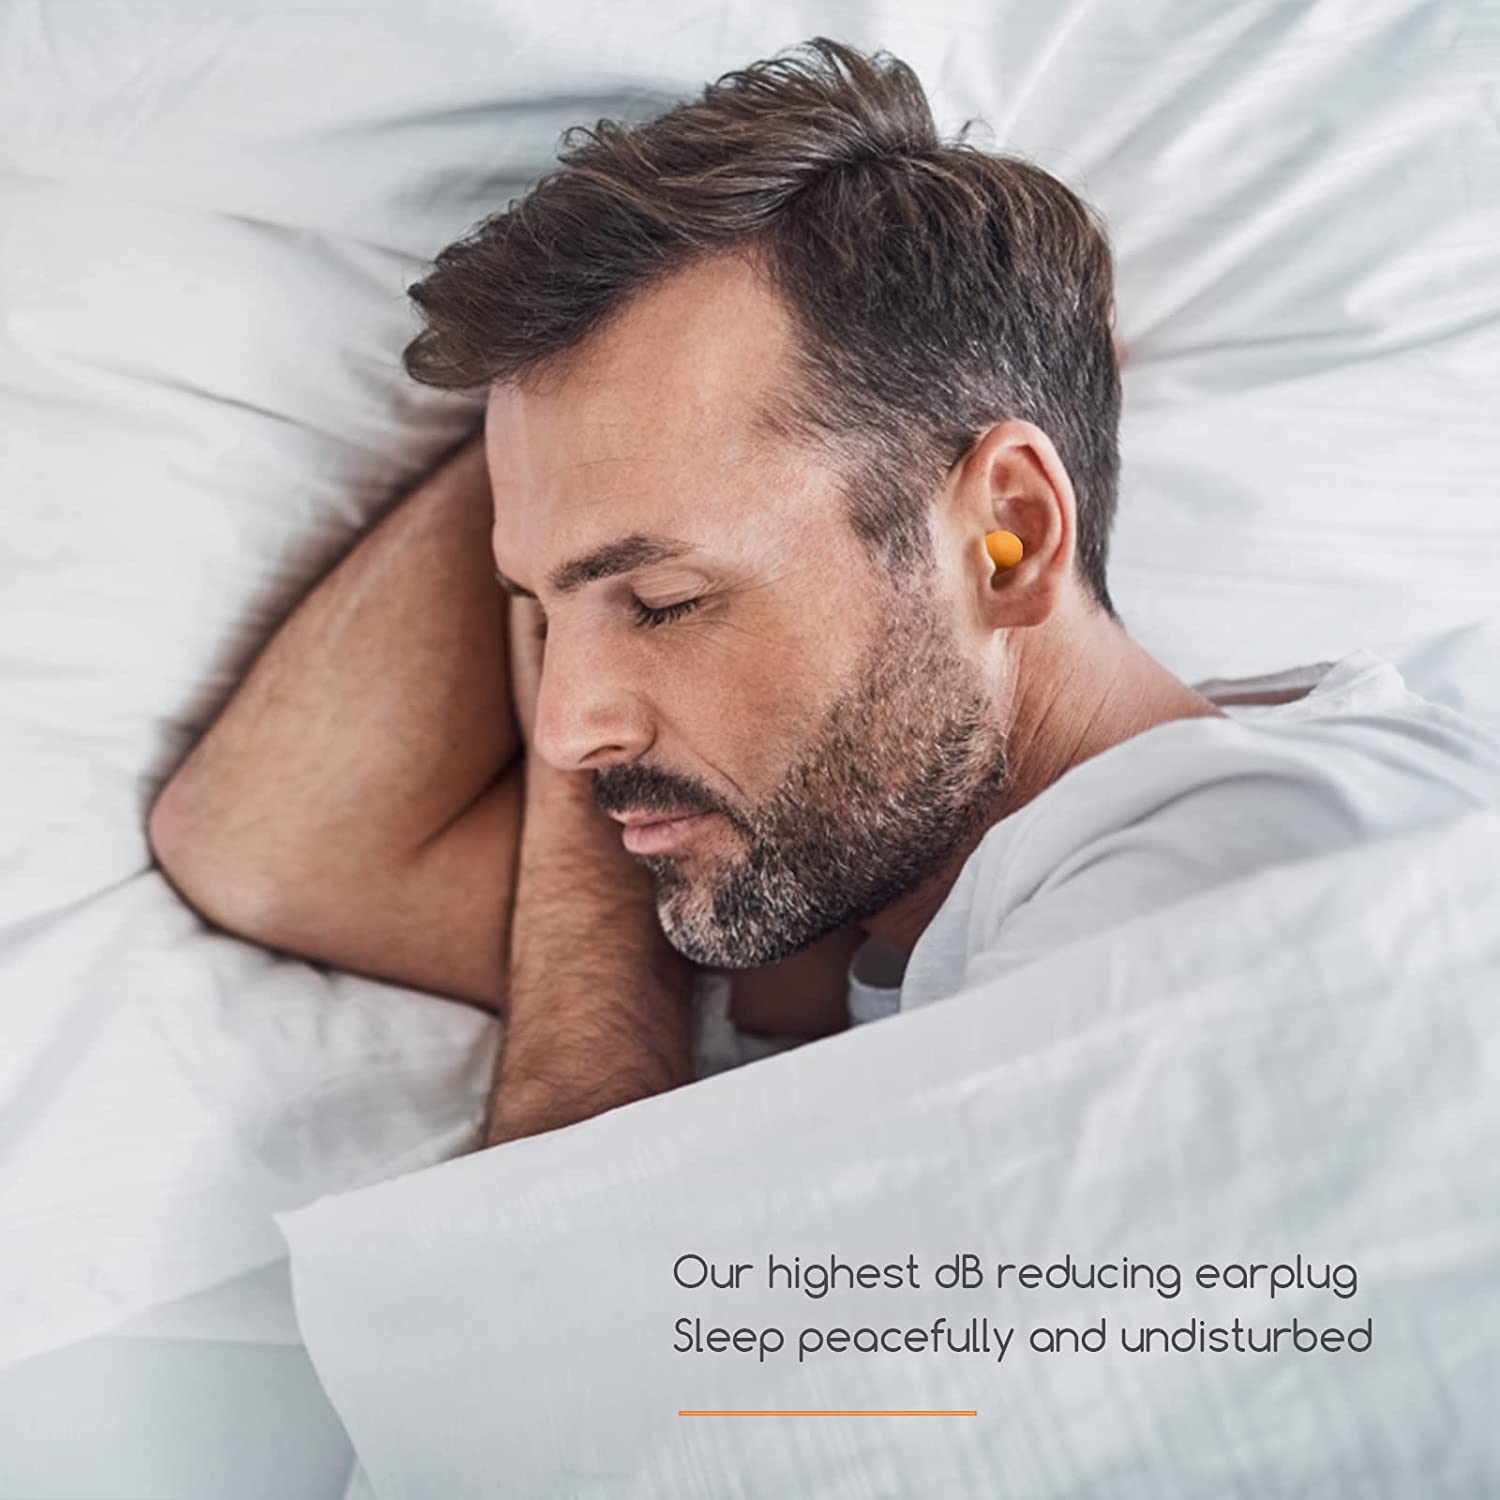 Tapones para dormir: protegen tus oídos y te aíslan del ruido